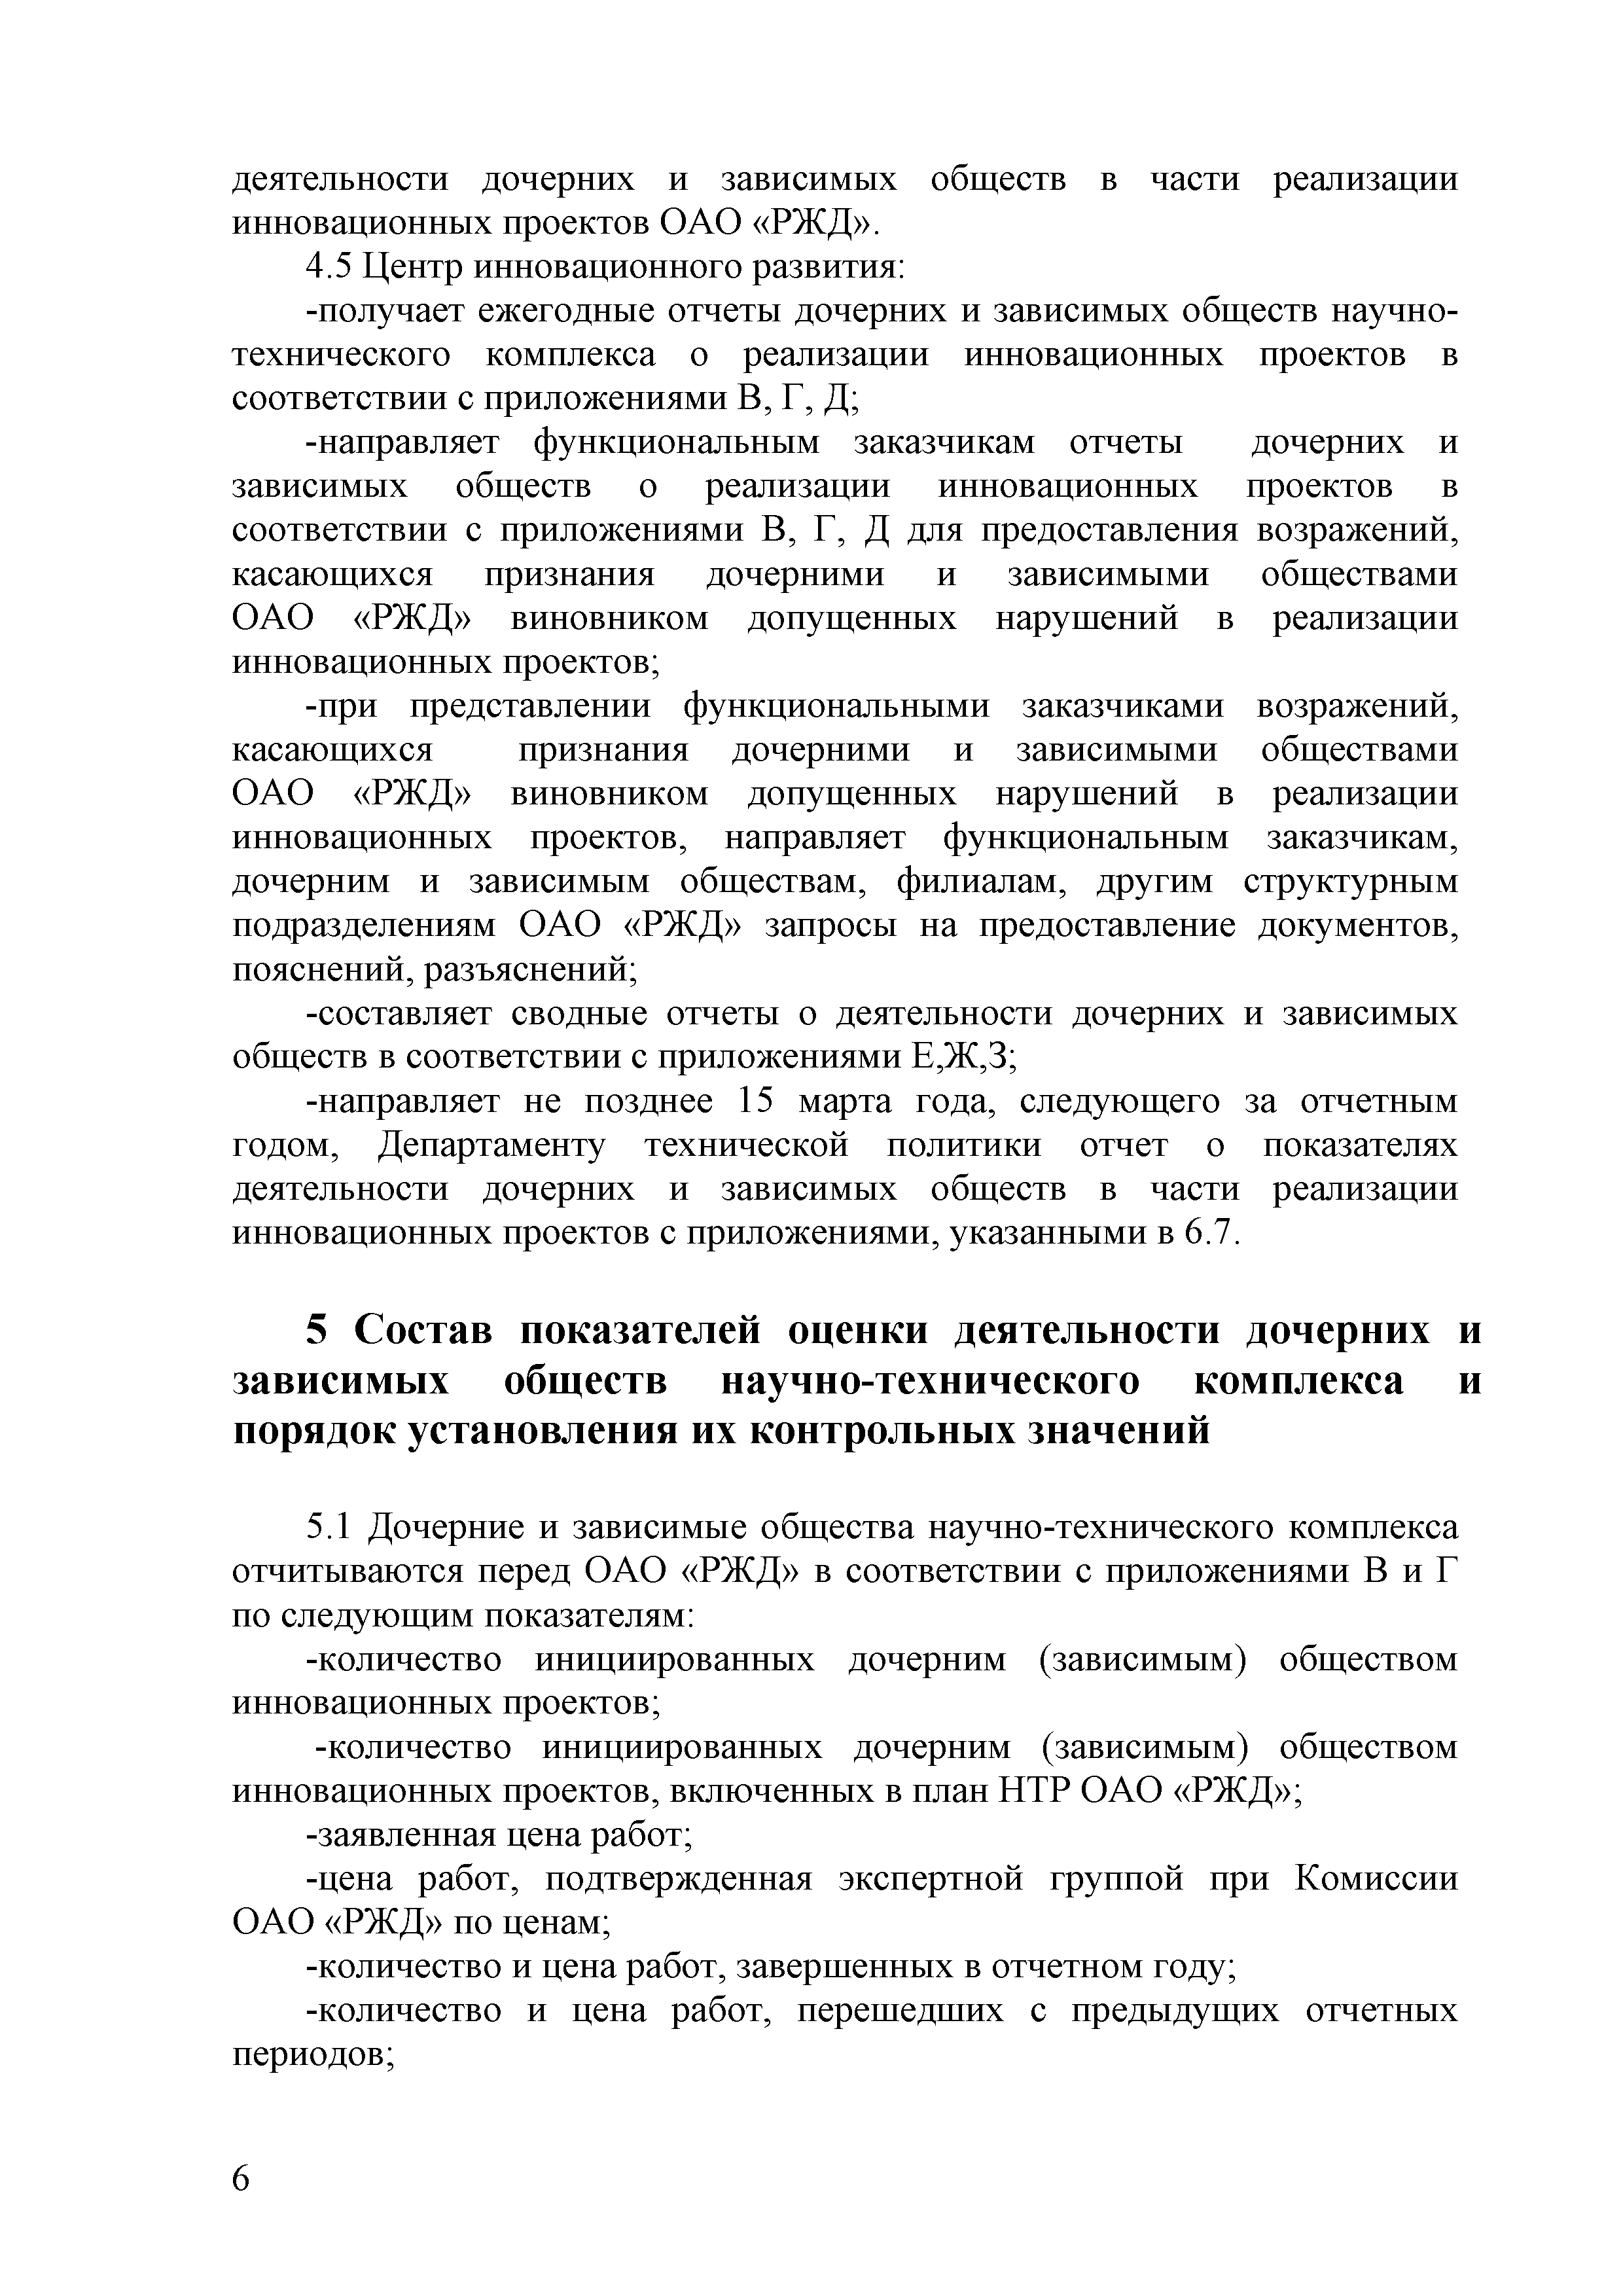 СТО РЖД 1.08.008-2009